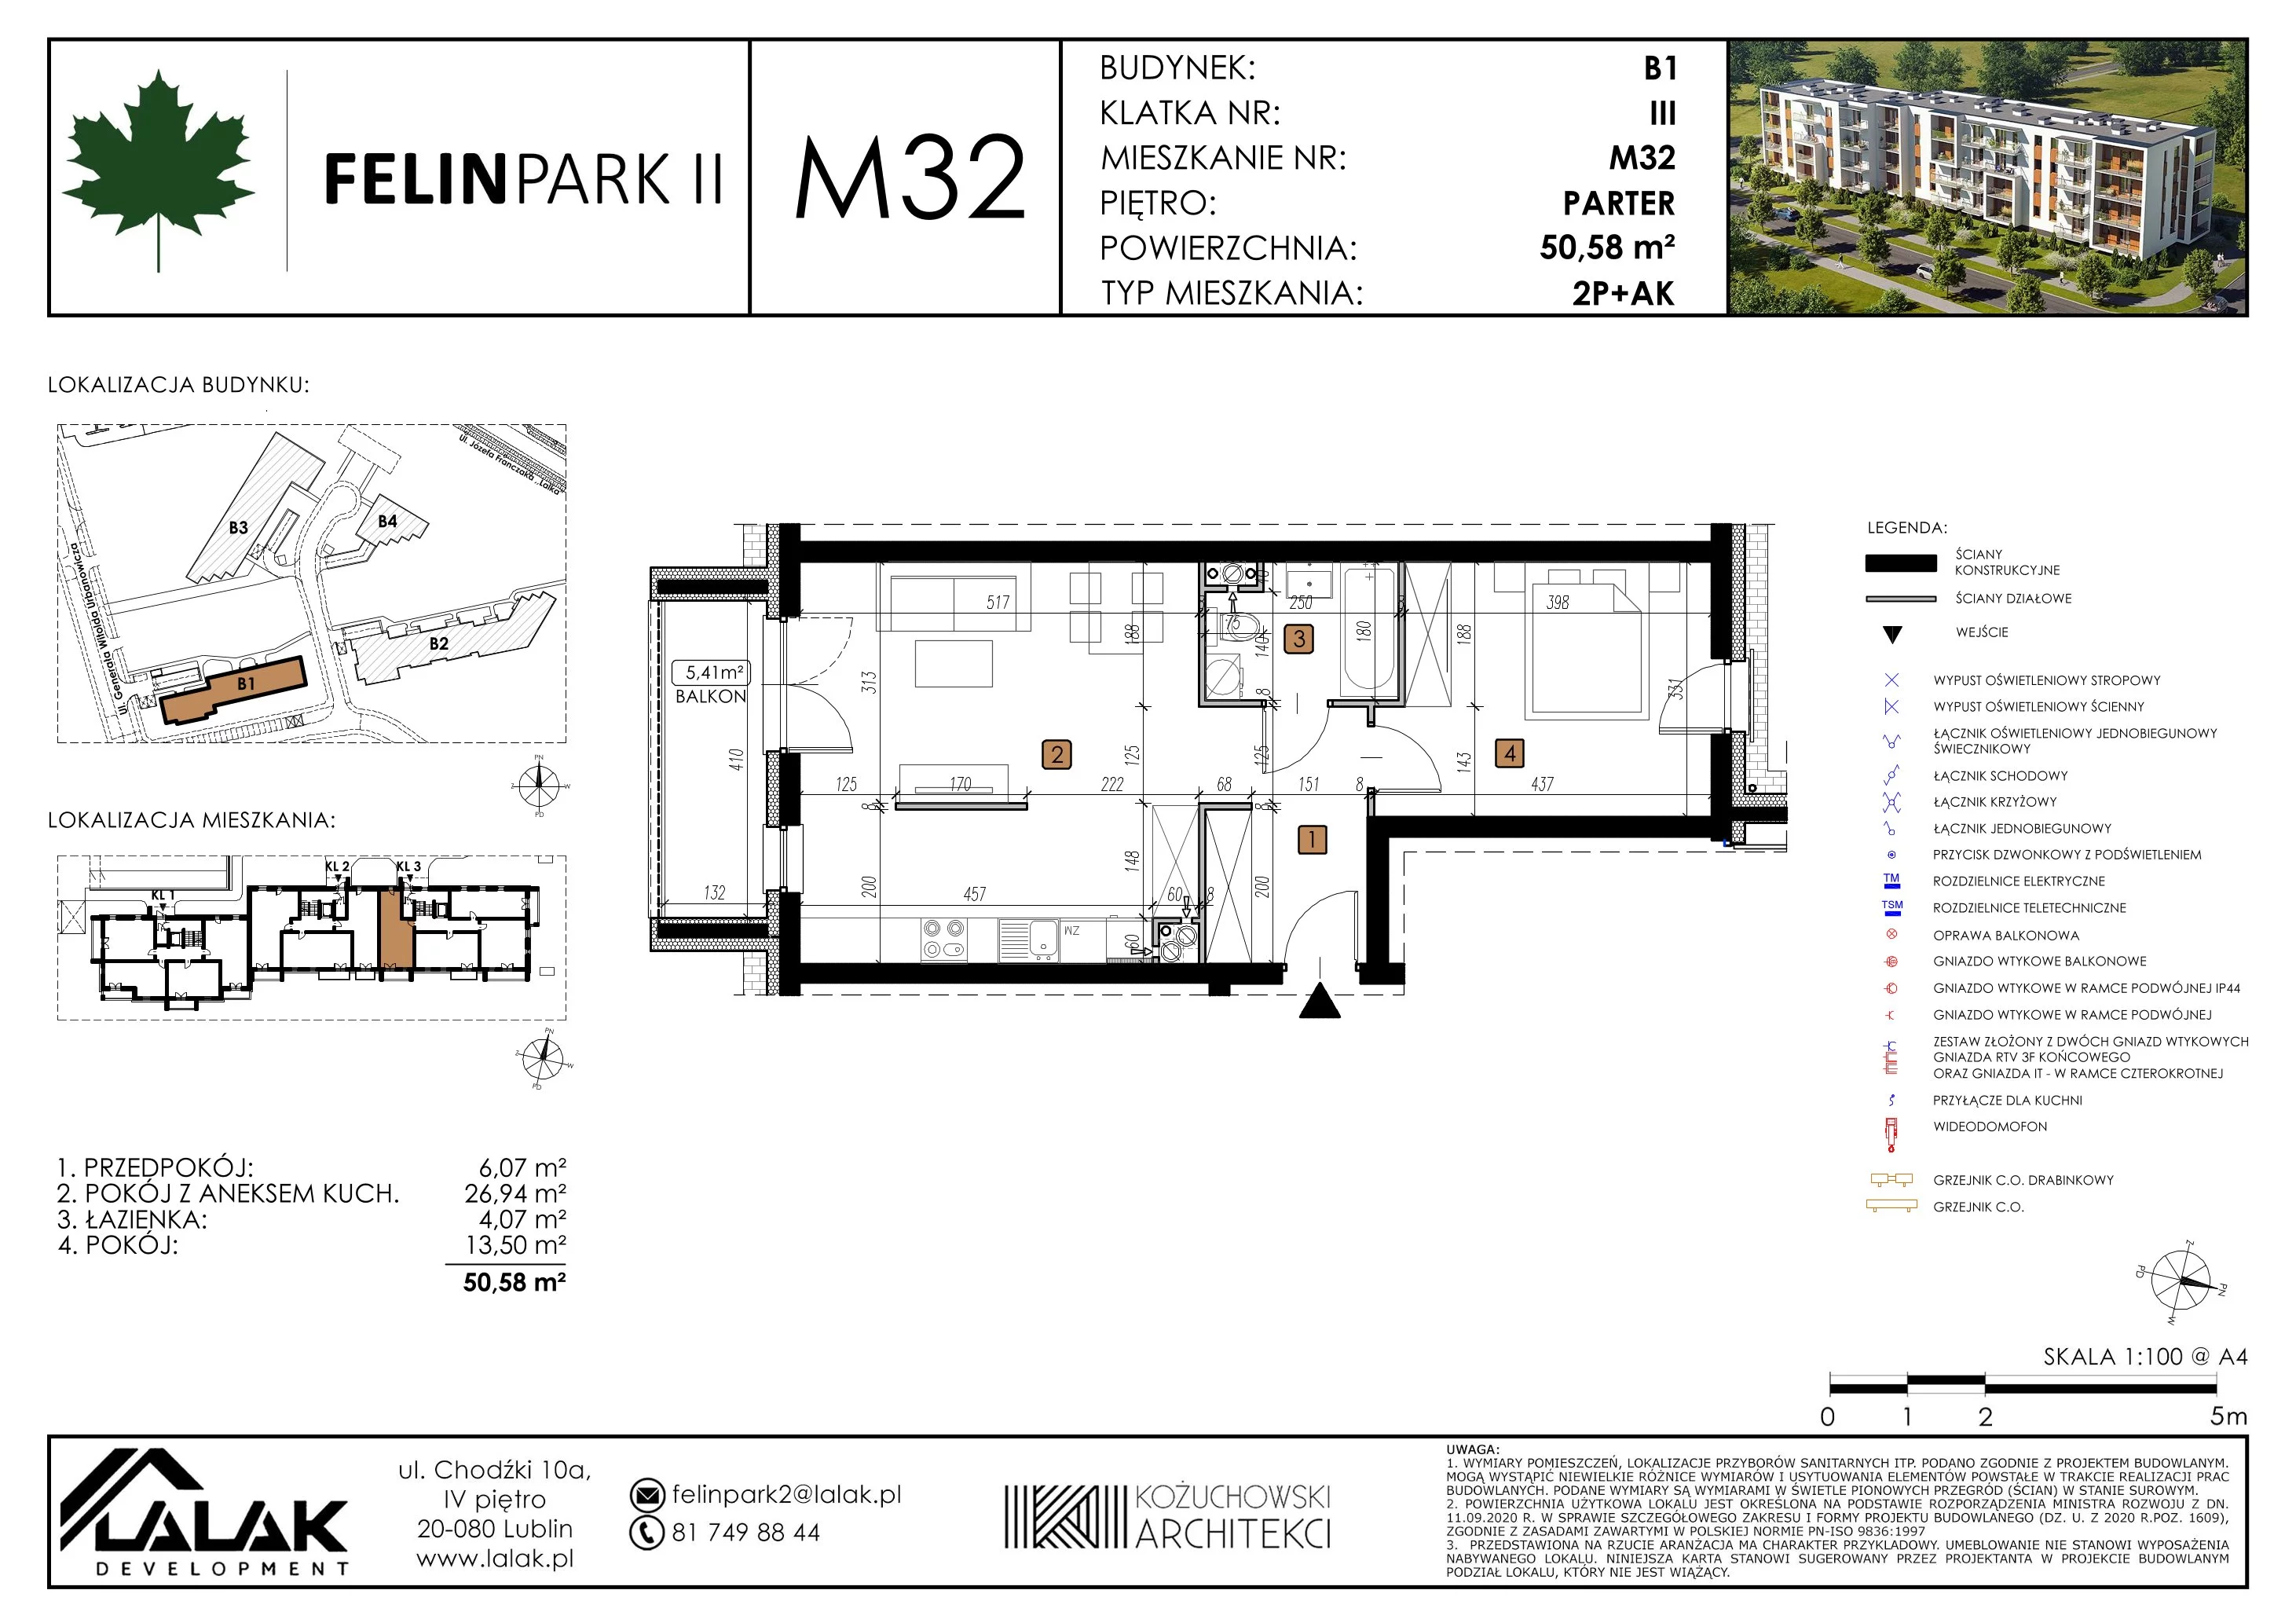 Mieszkanie 50,58 m², parter, oferta nr B1_M32/P, Felin Park II, Lublin, Felin, ul. gen. Stanisława Skalskiego 8-10